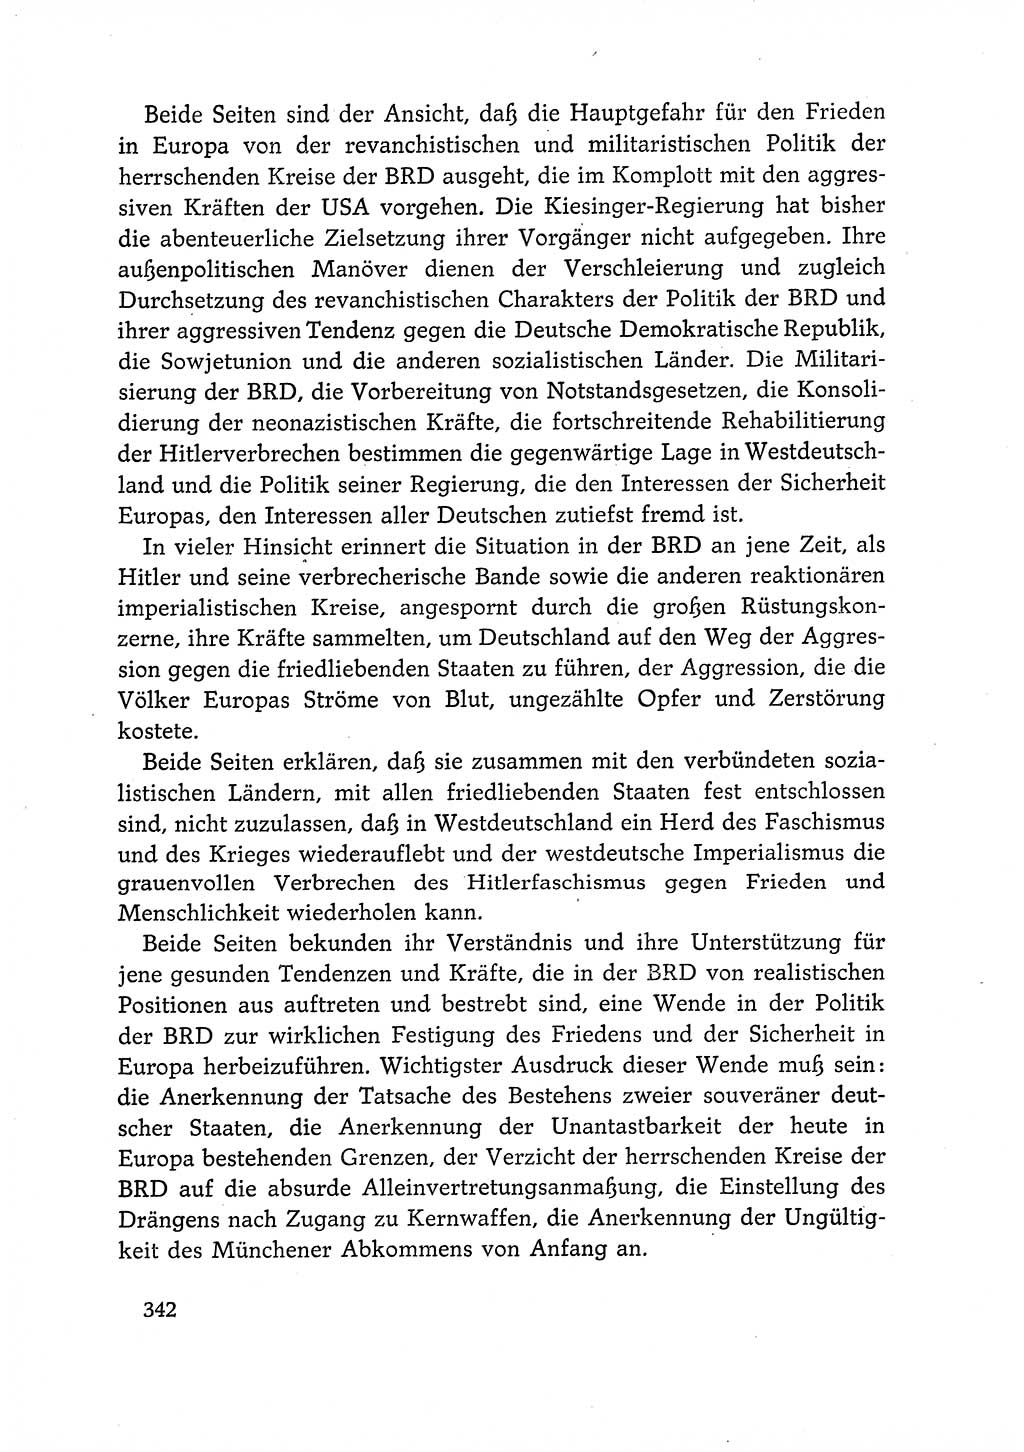 Dokumente der Sozialistischen Einheitspartei Deutschlands (SED) [Deutsche Demokratische Republik (DDR)] 1966-1967, Seite 342 (Dok. SED DDR 1966-1967, S. 342)